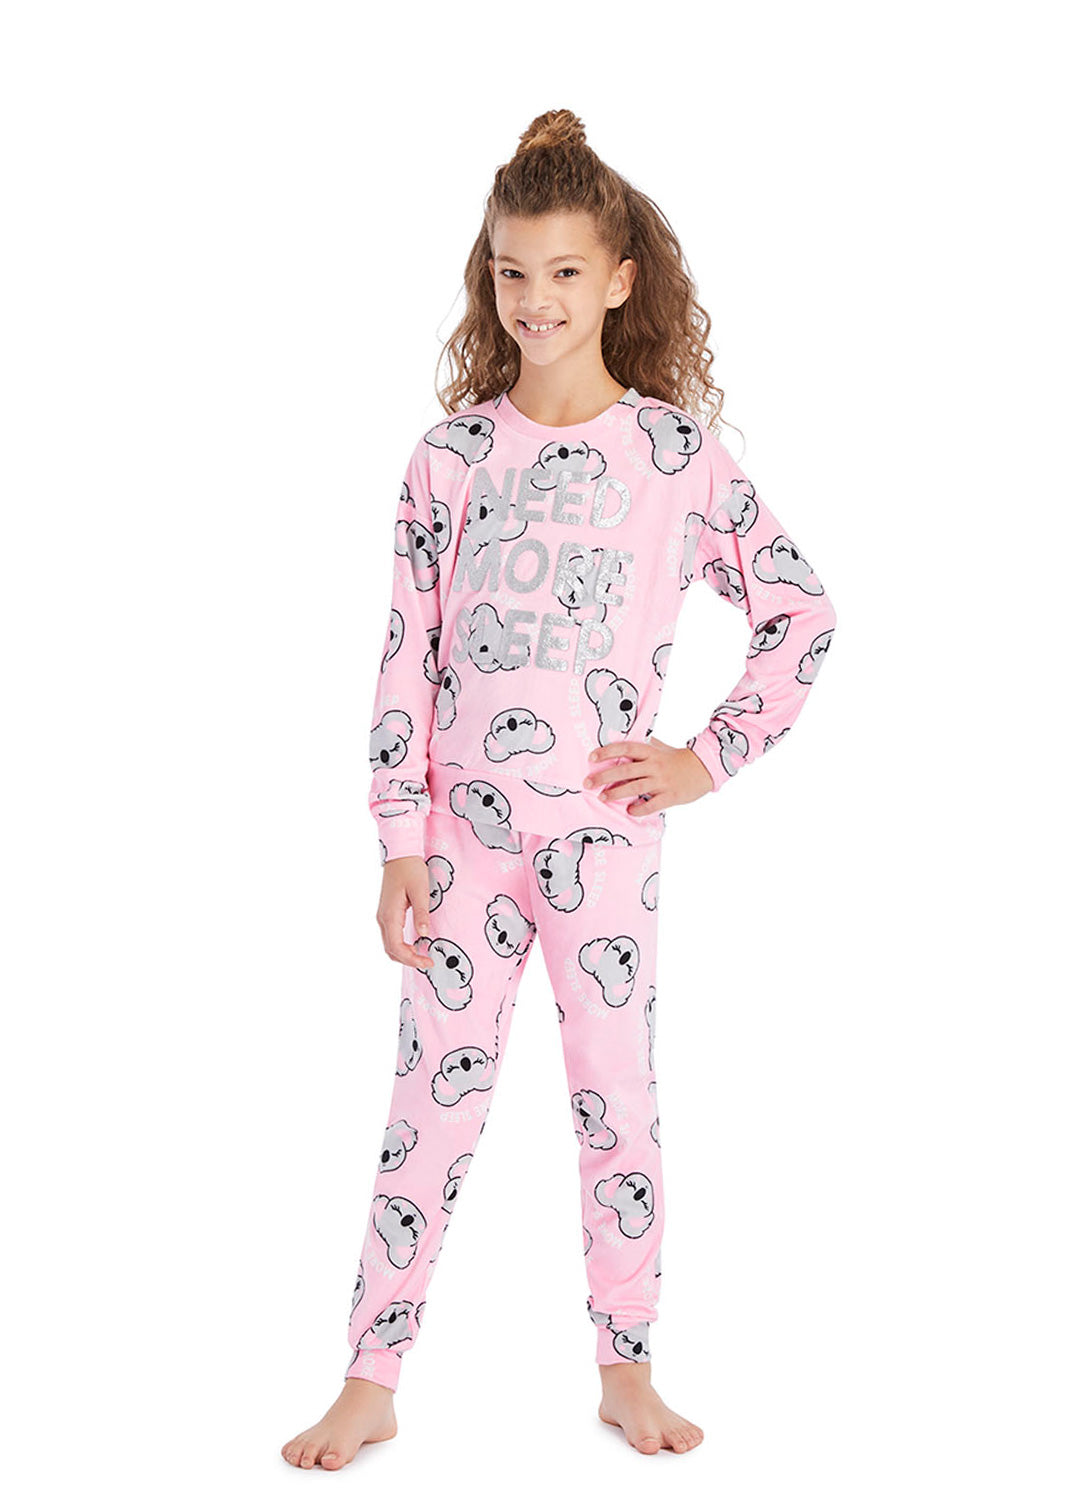 Girl wearing Pajama Set with Pink Koala Print